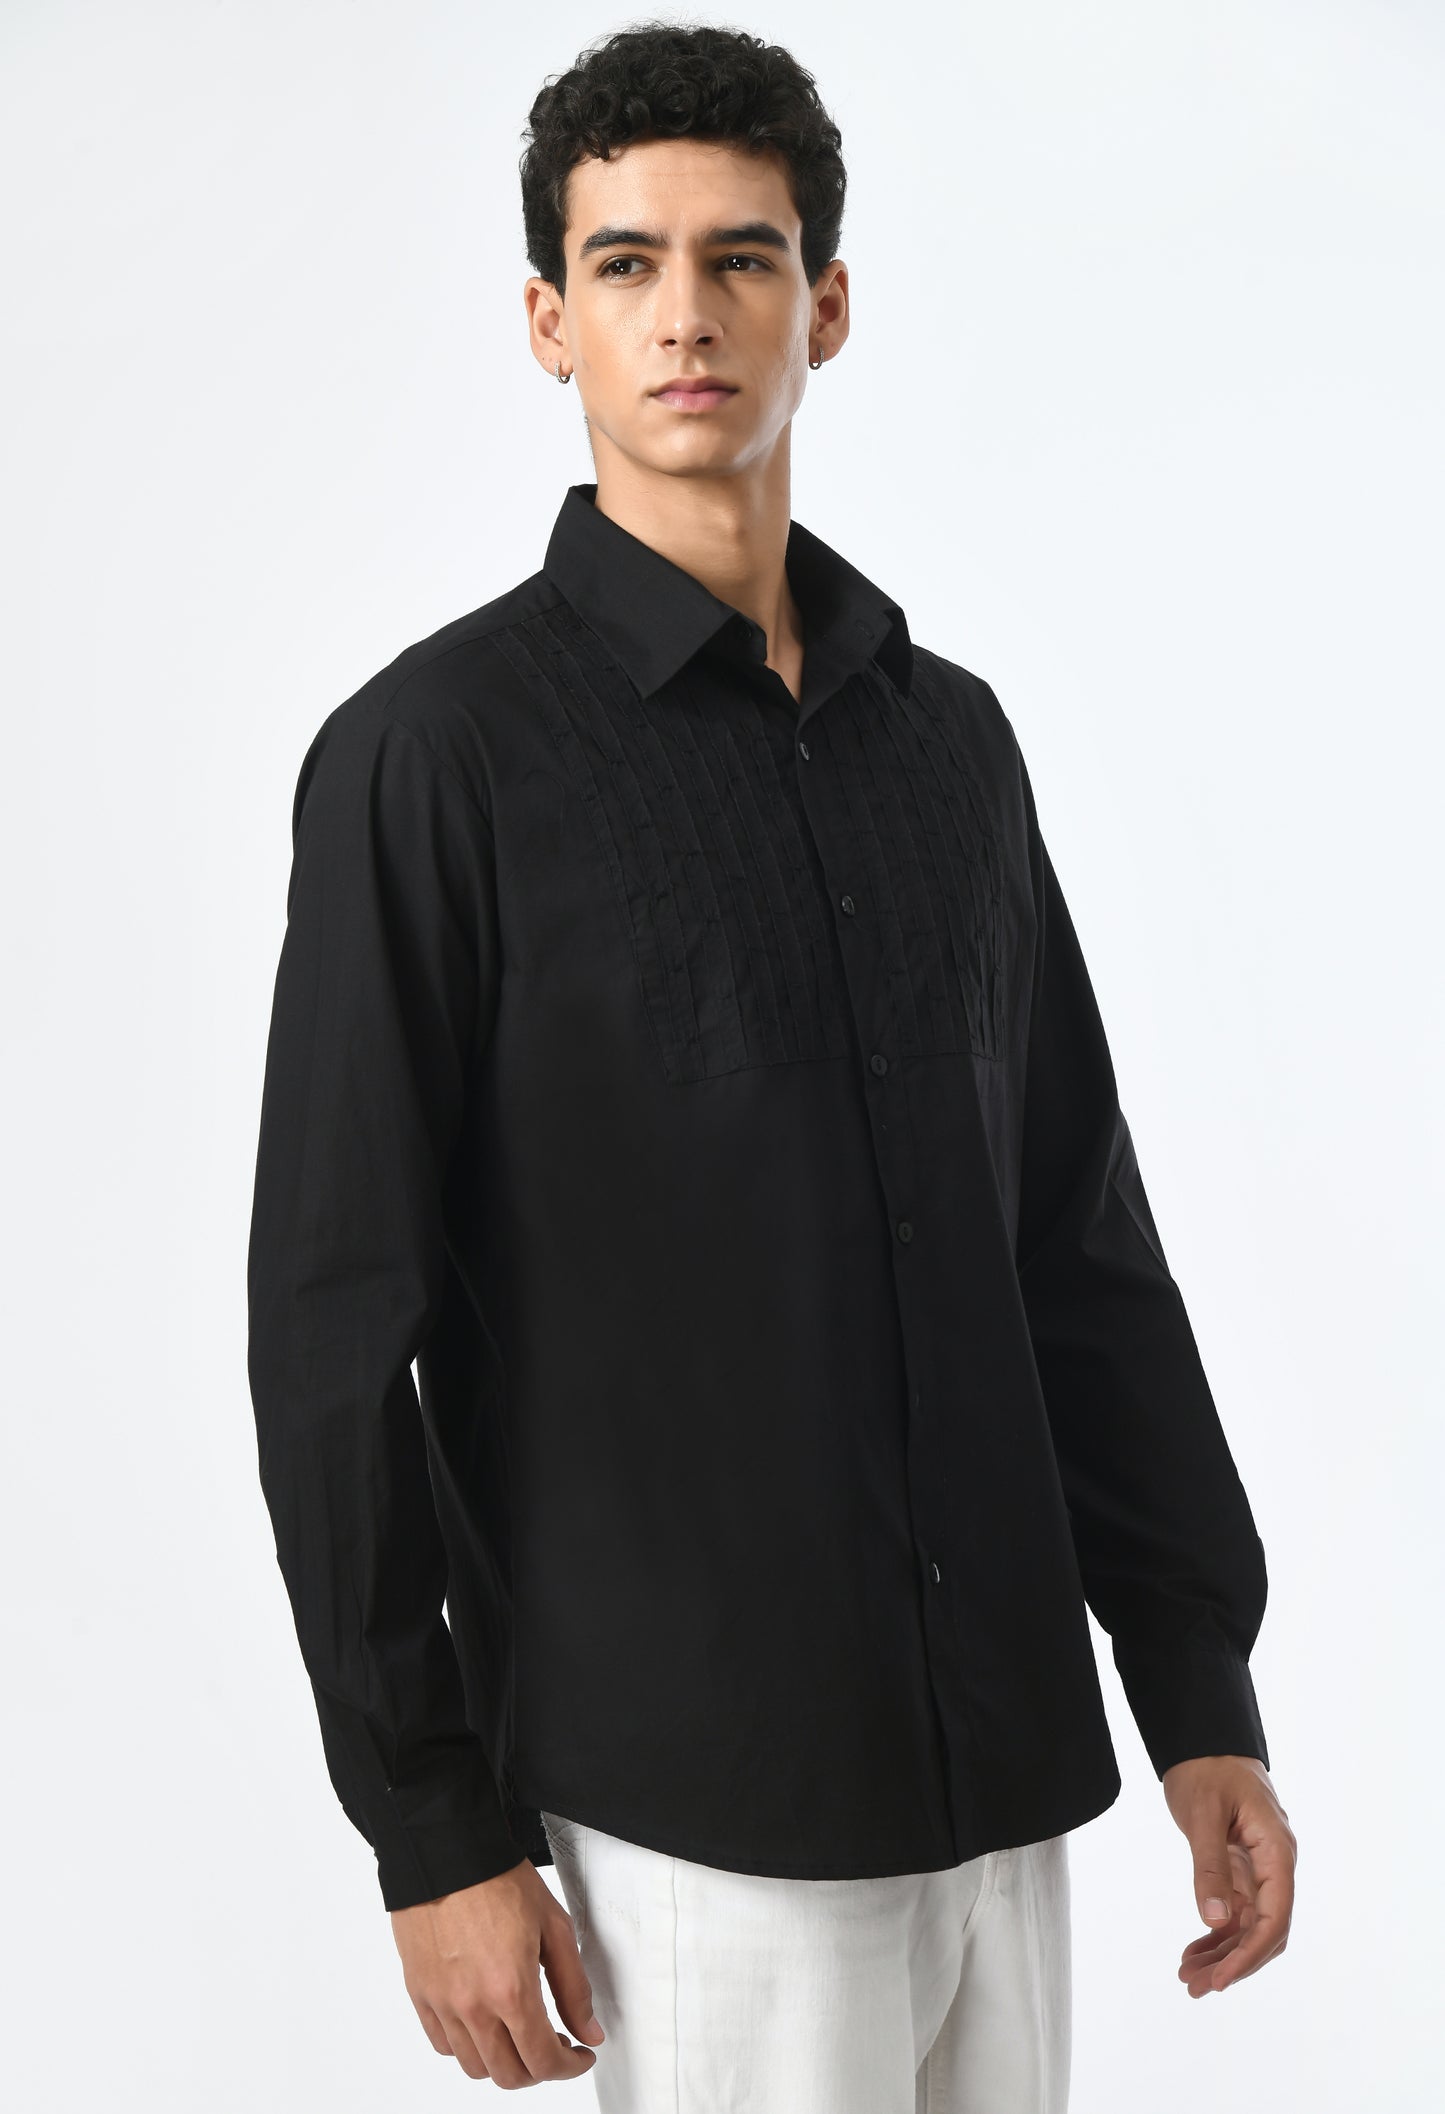 Semi-formal look men's black shirt.